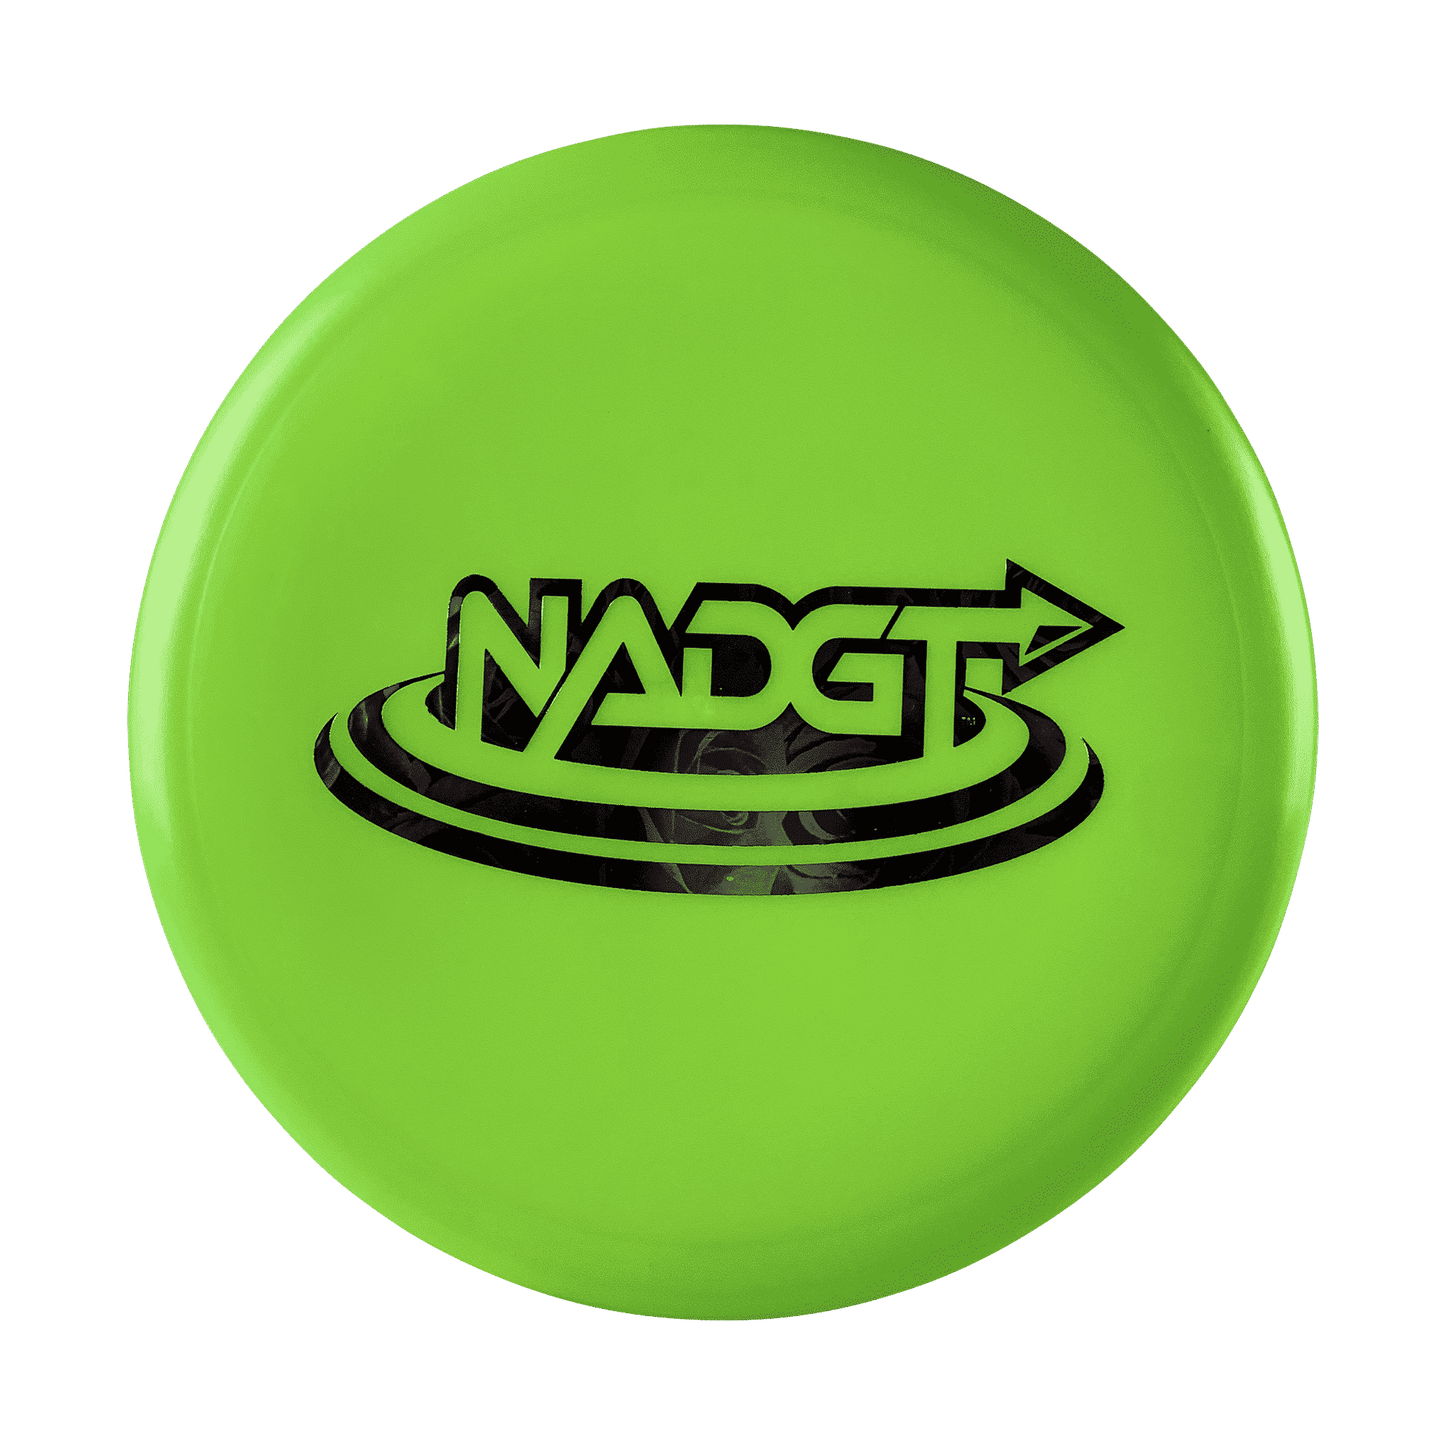 PL Rift - NADGT Stamp Disc DGA green 173 